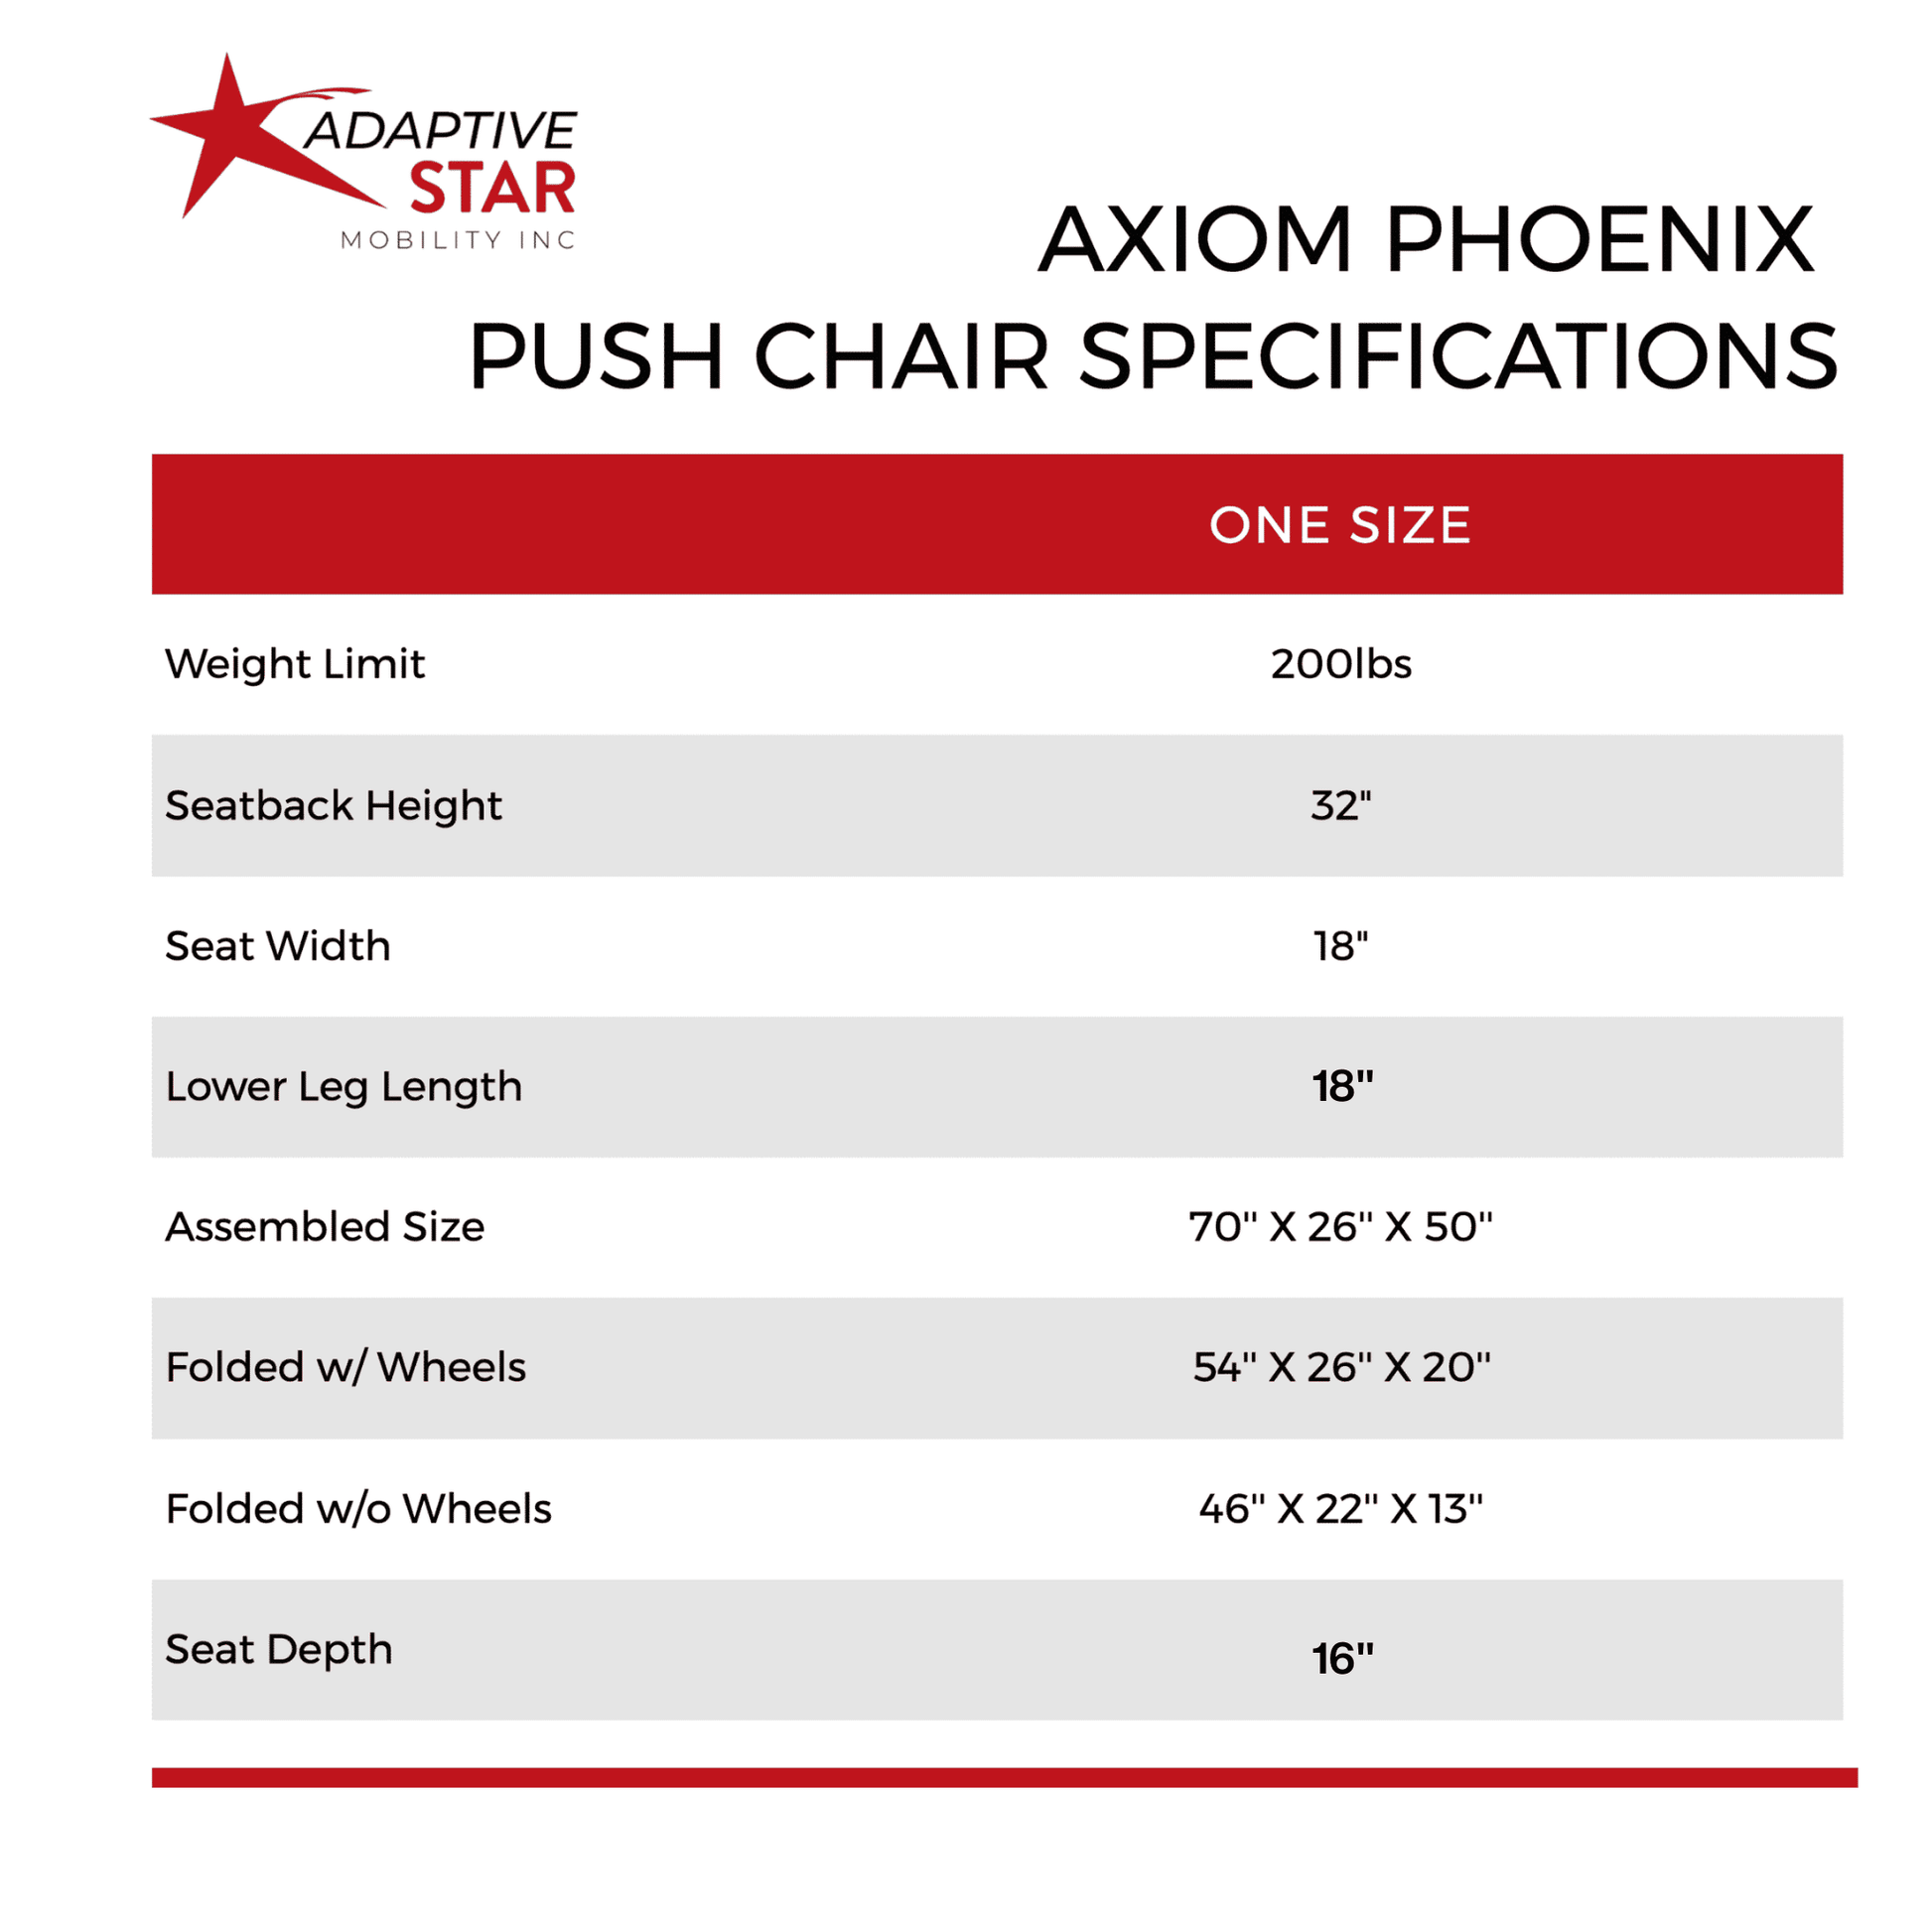 Pheonix specifications